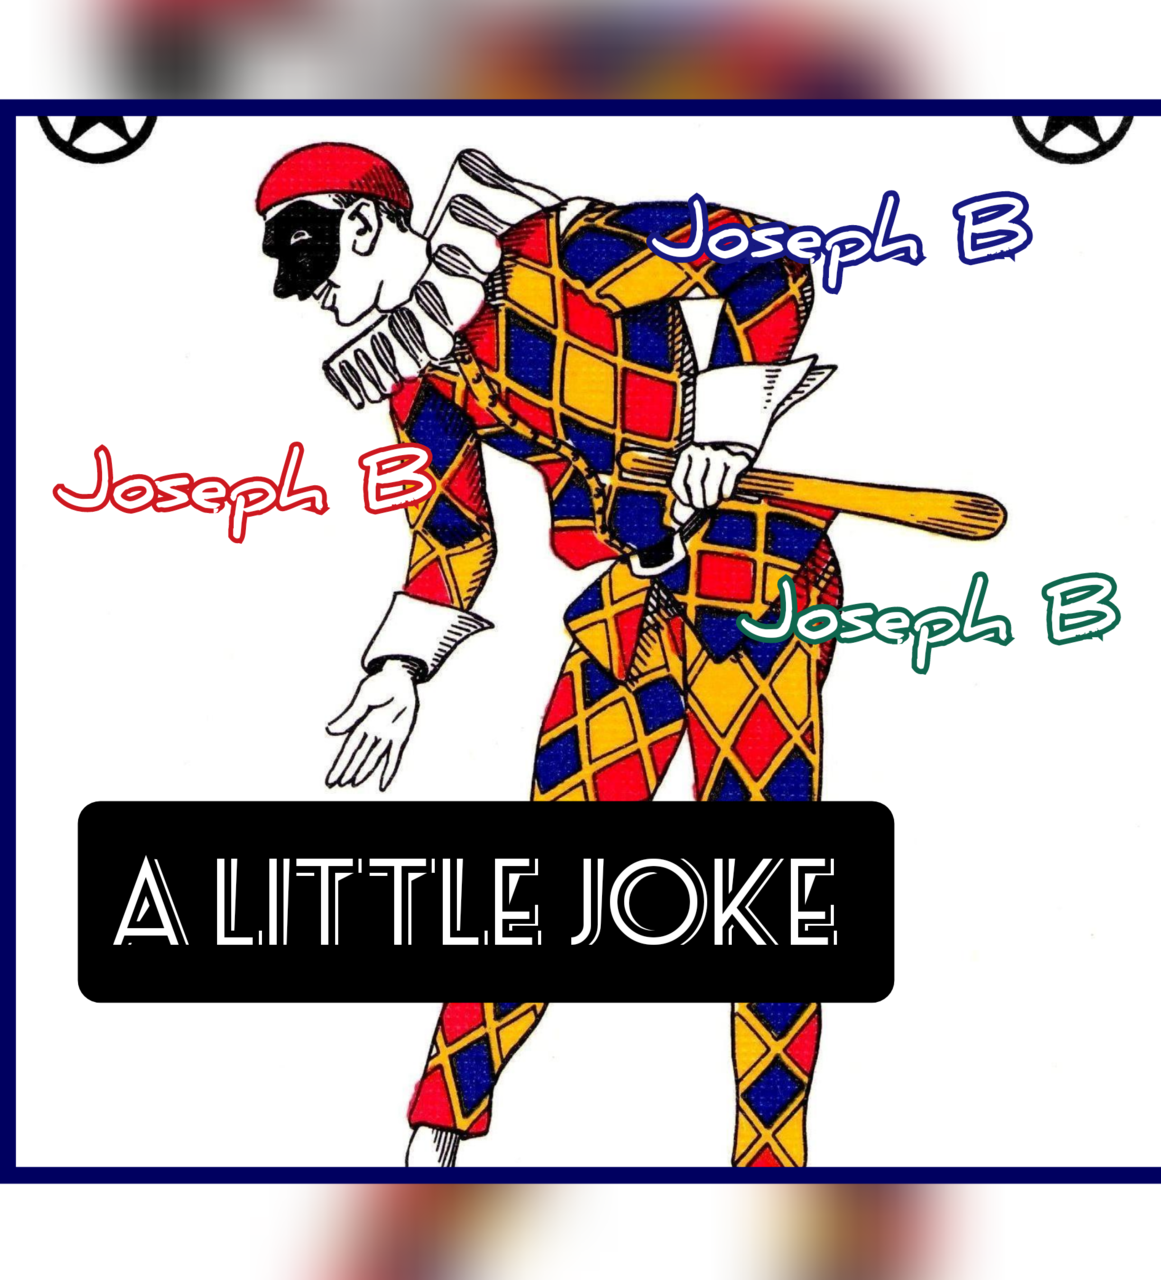 A Little Joke by Joseph B. (Mp4 Video Download)